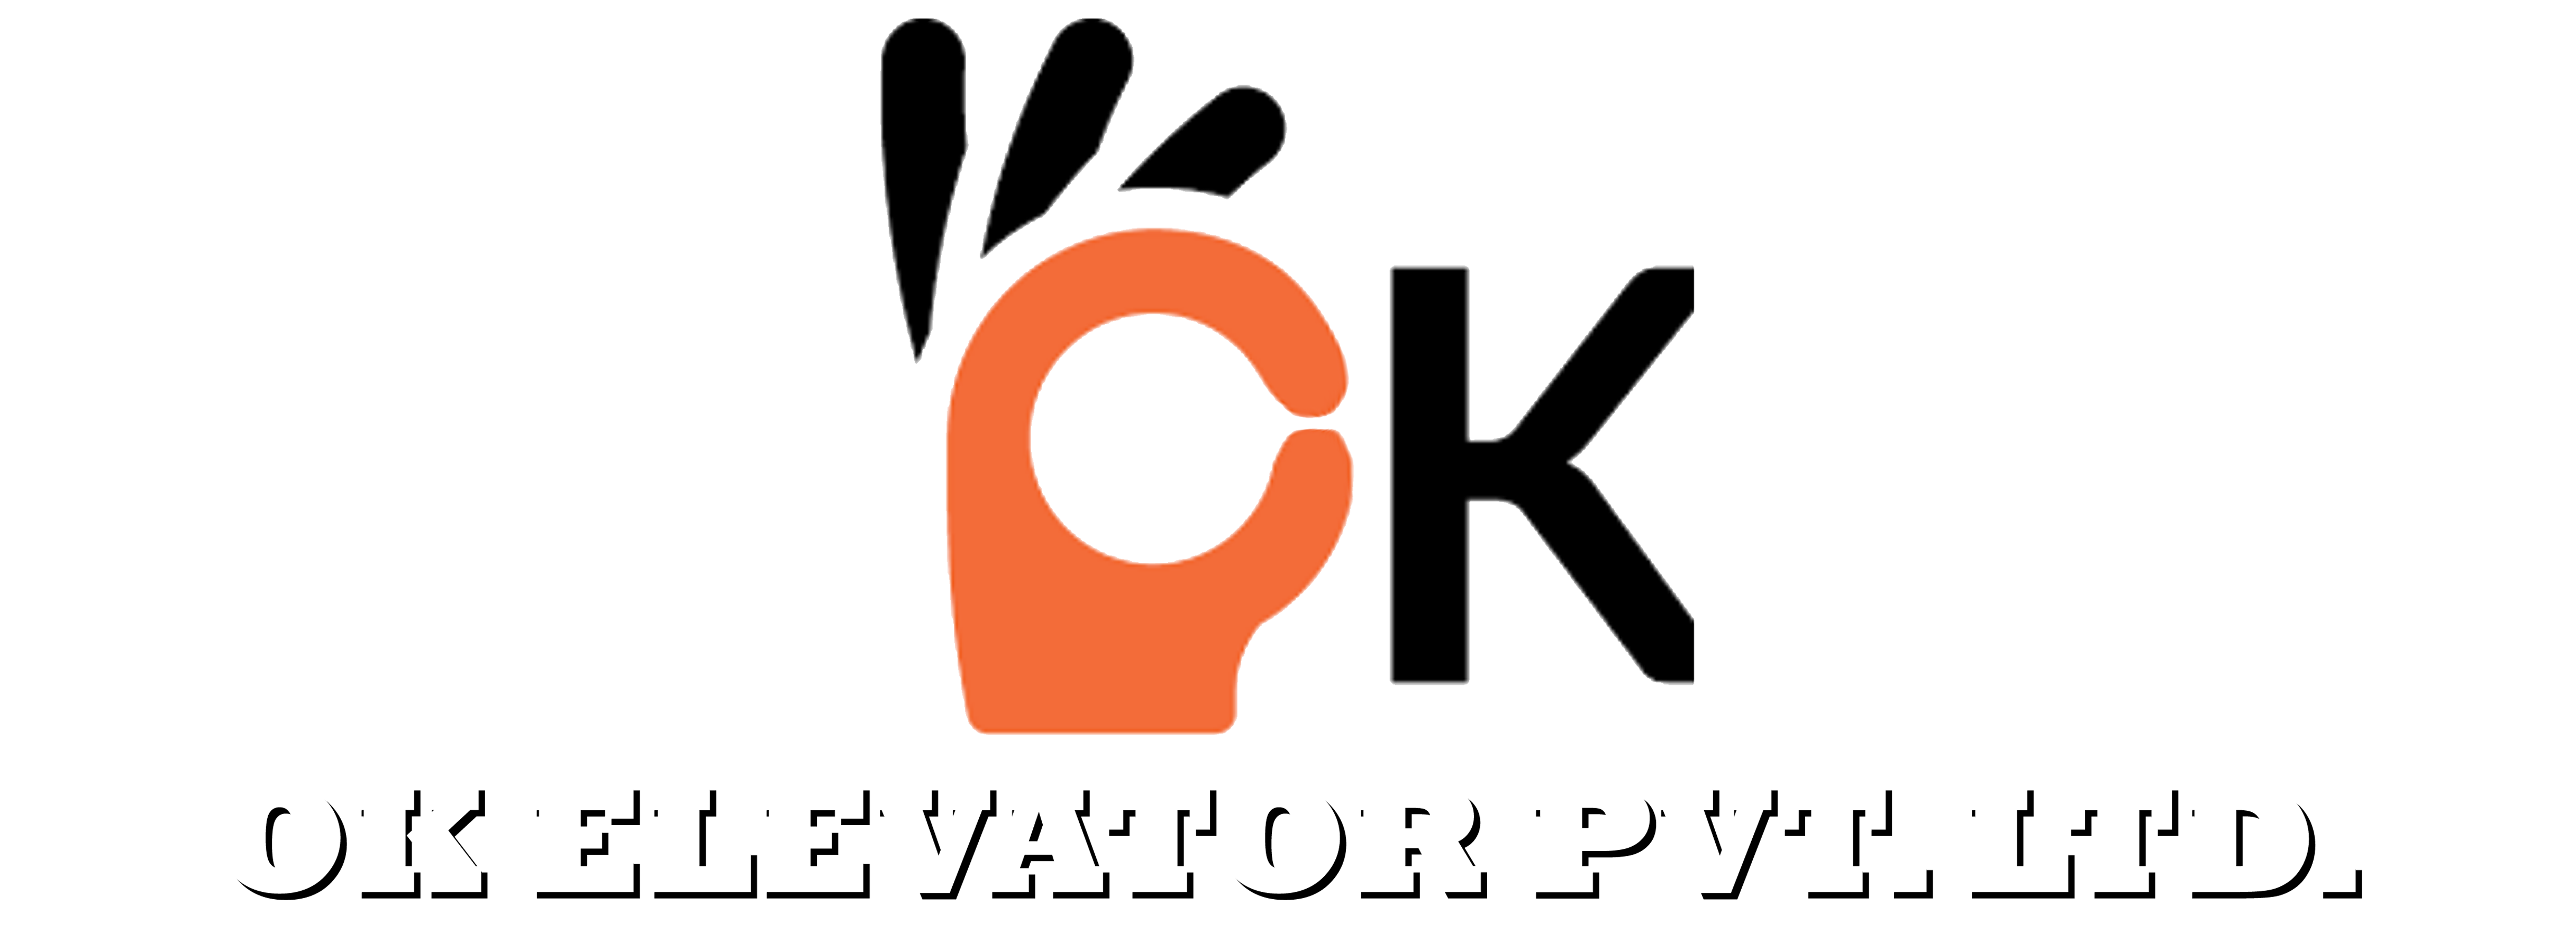 Ok Elevators